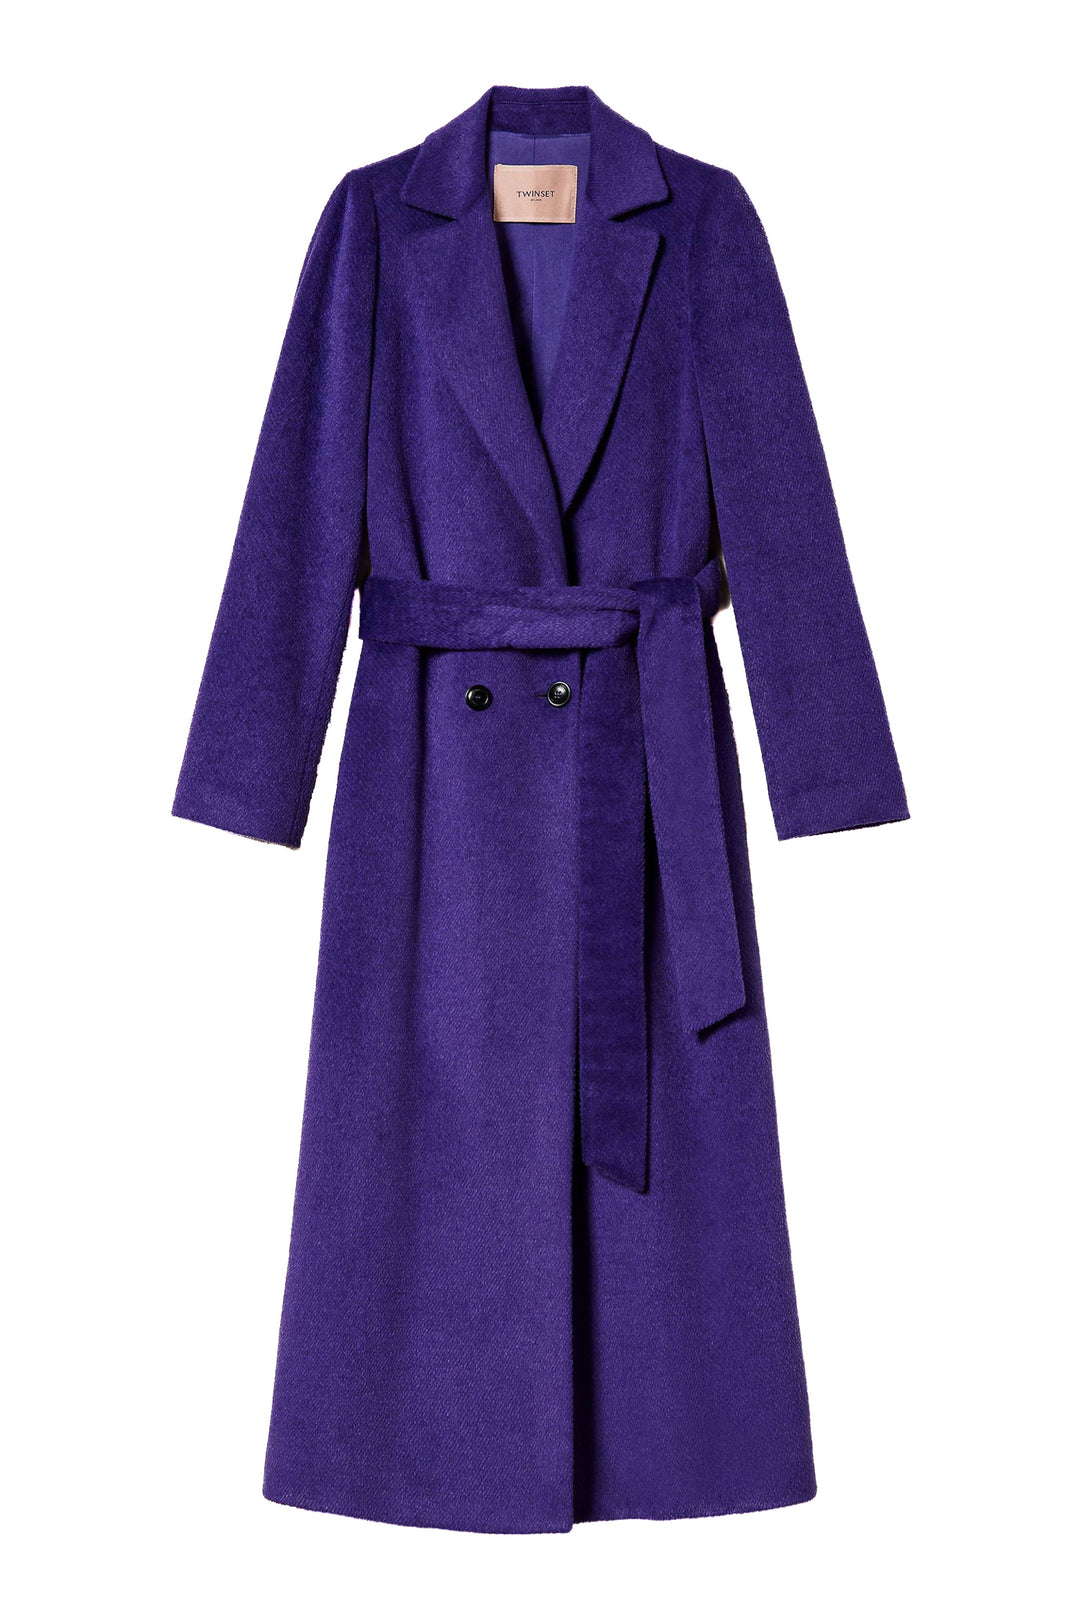 TWINSET Cappotto lungo lavanda scuro in panno misto lana - Mancinelli 1954